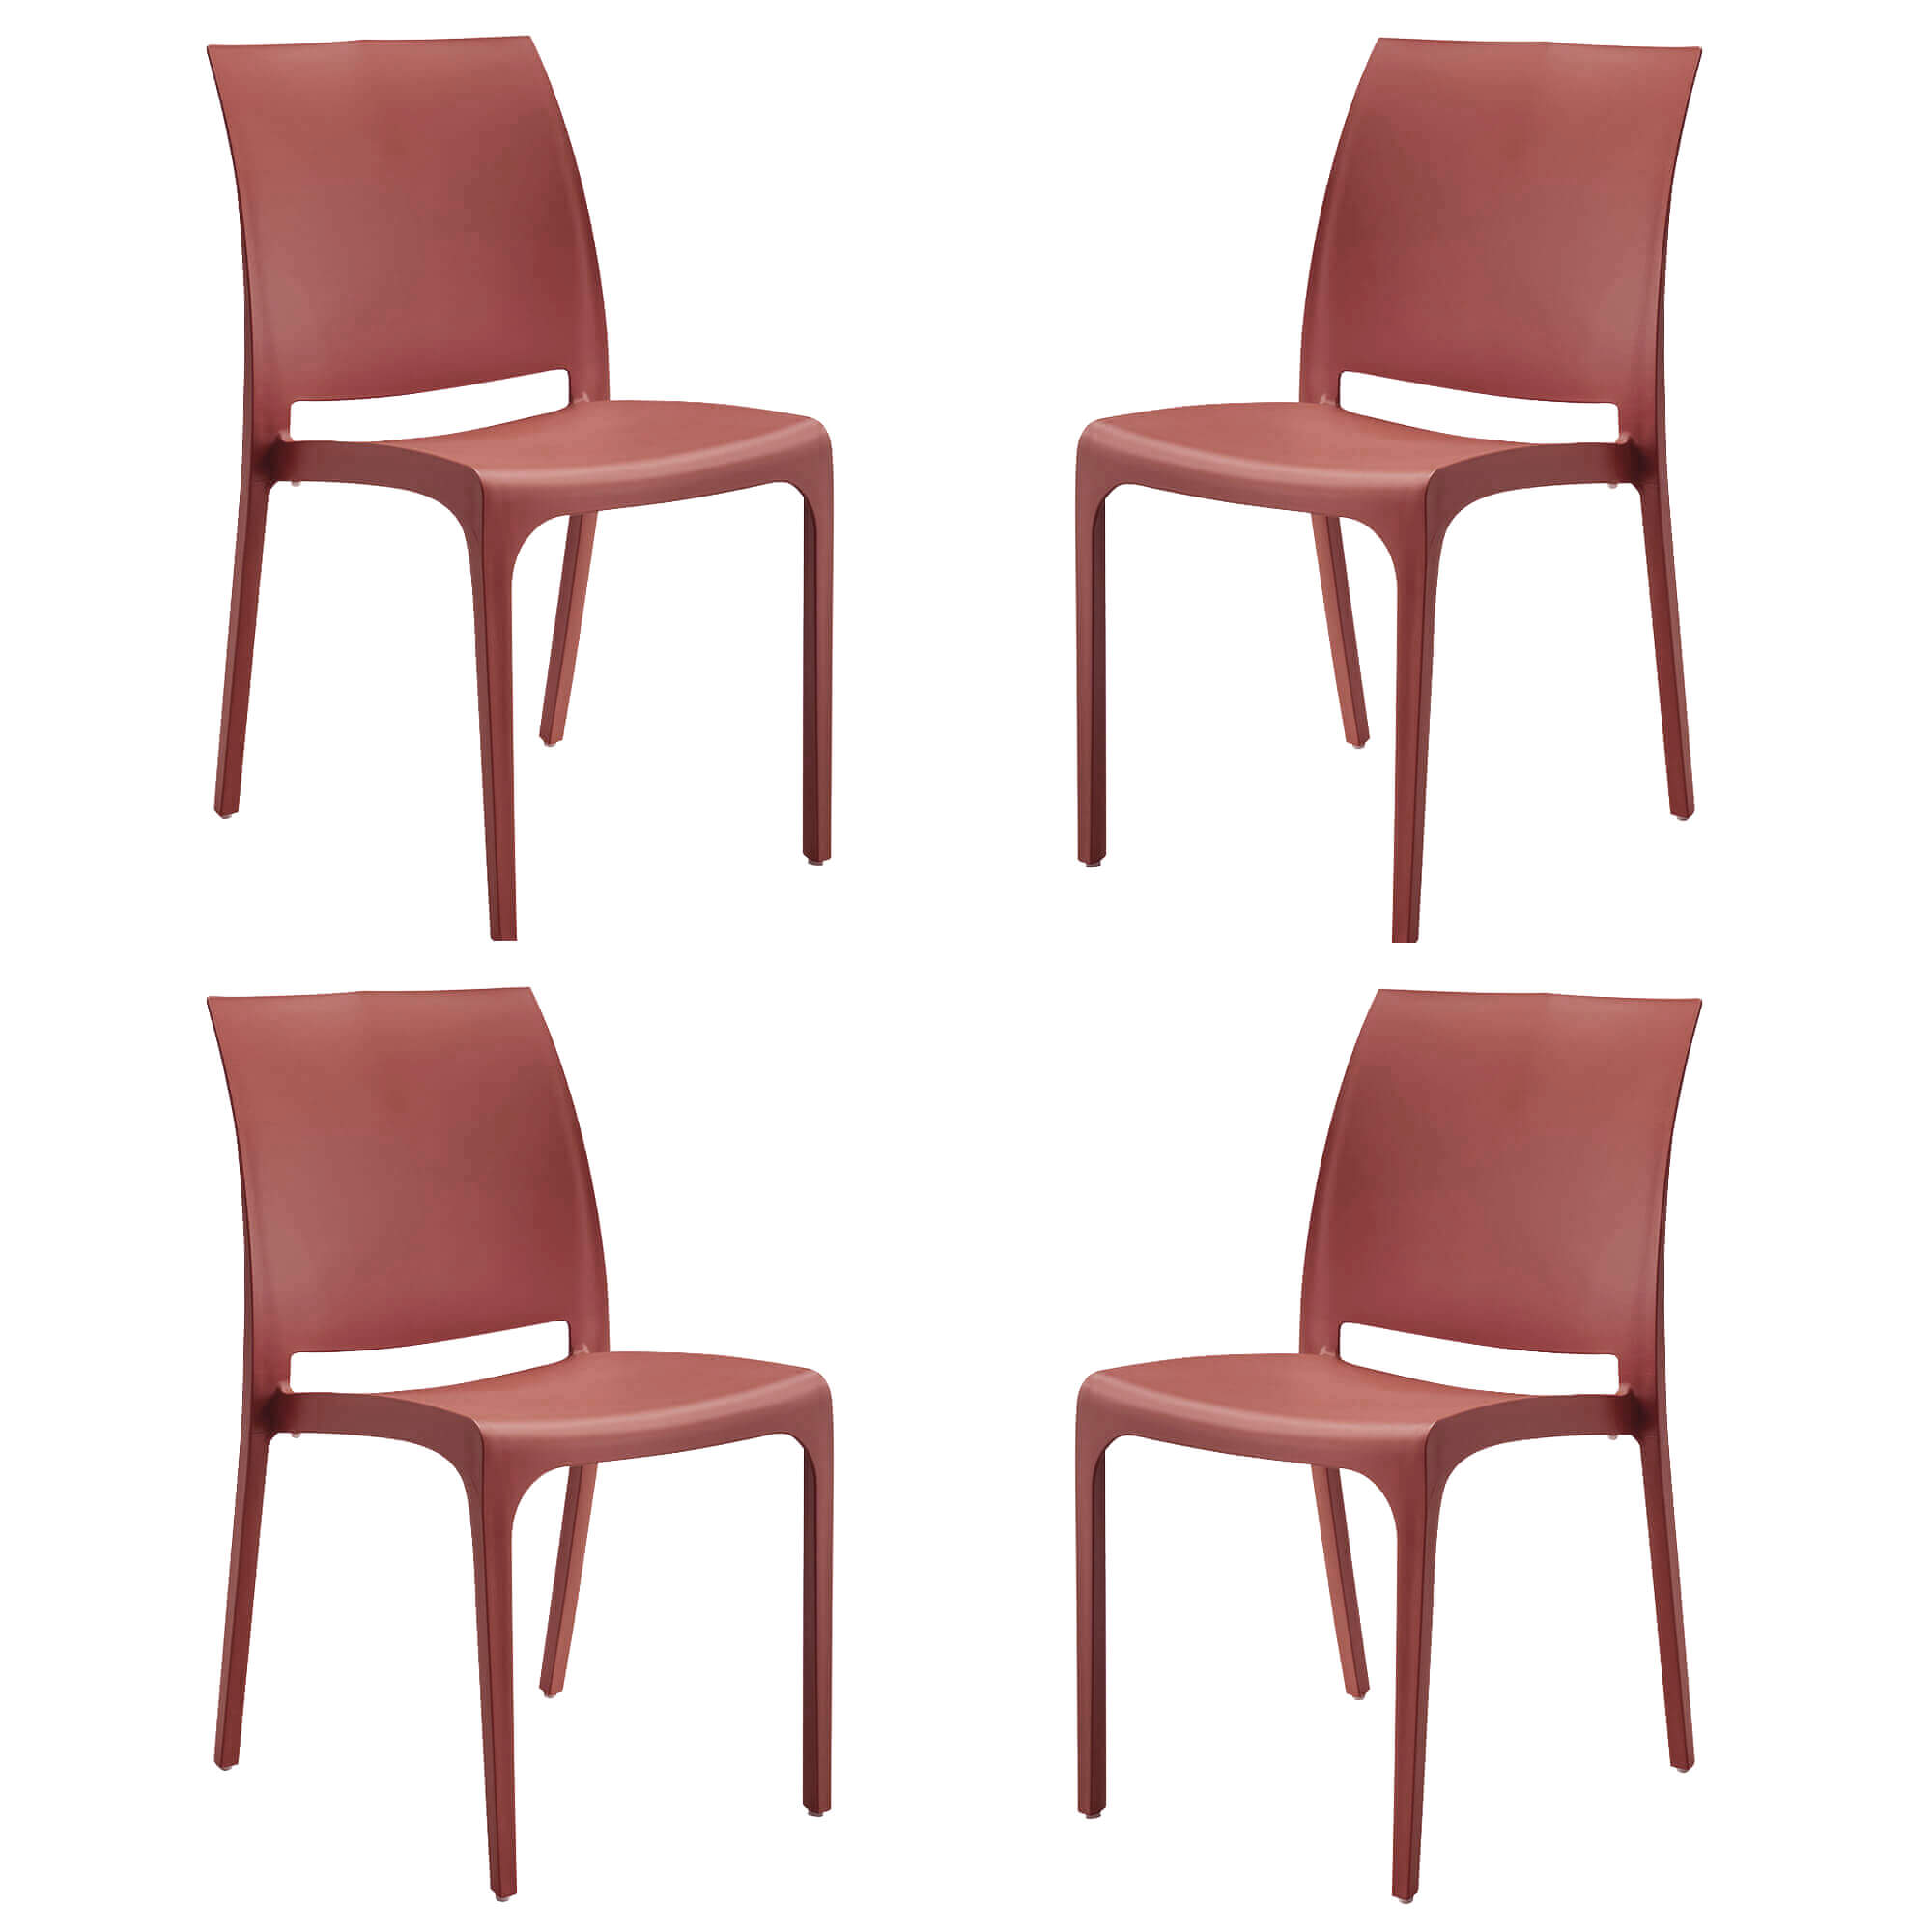 Milani Home set di 4 sedie poltrone da giardino in plastica design moderno colorata Rosso Rosso 46 x 80 x 54 cm